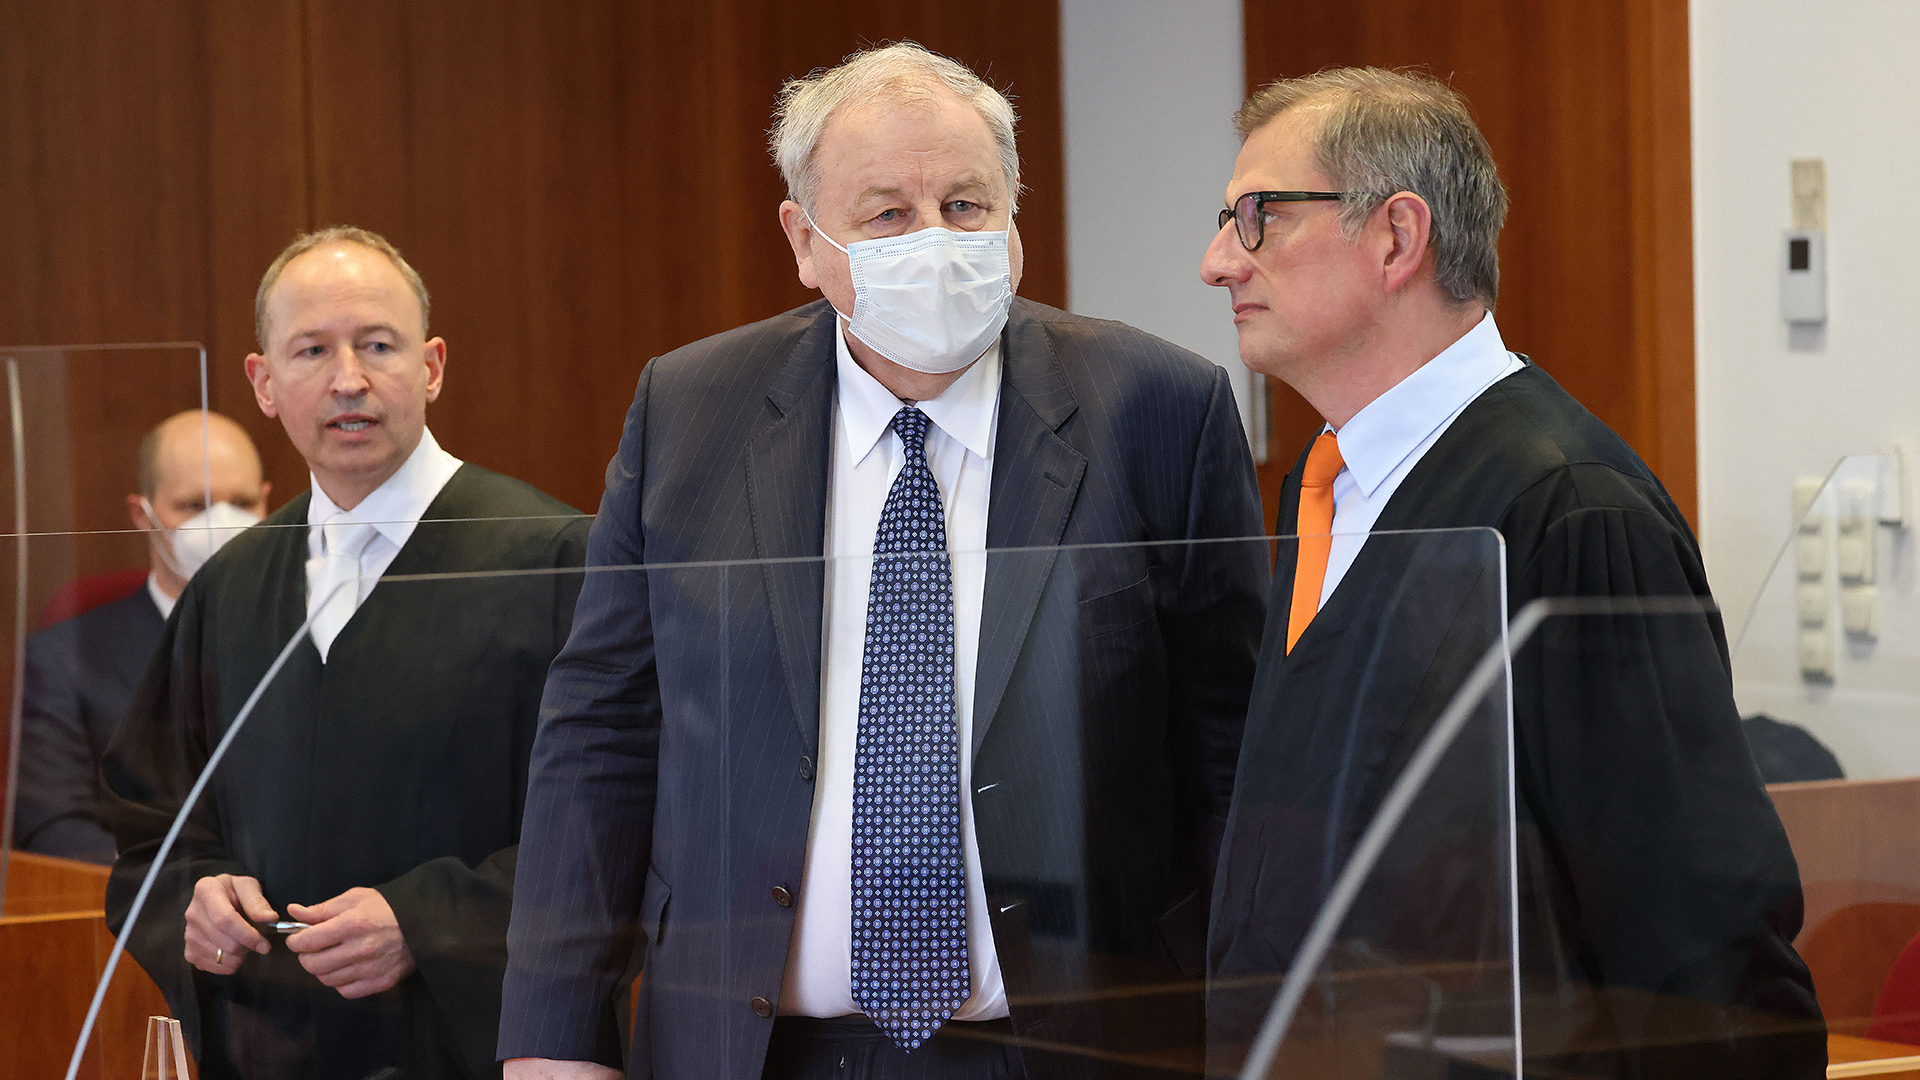 Hanno Berger (M), Angeklagter, steht im Gerichtssaal neben seinen Anwälten Carsten Rubarth (r) und Martin Kretschmer (l). | dpa